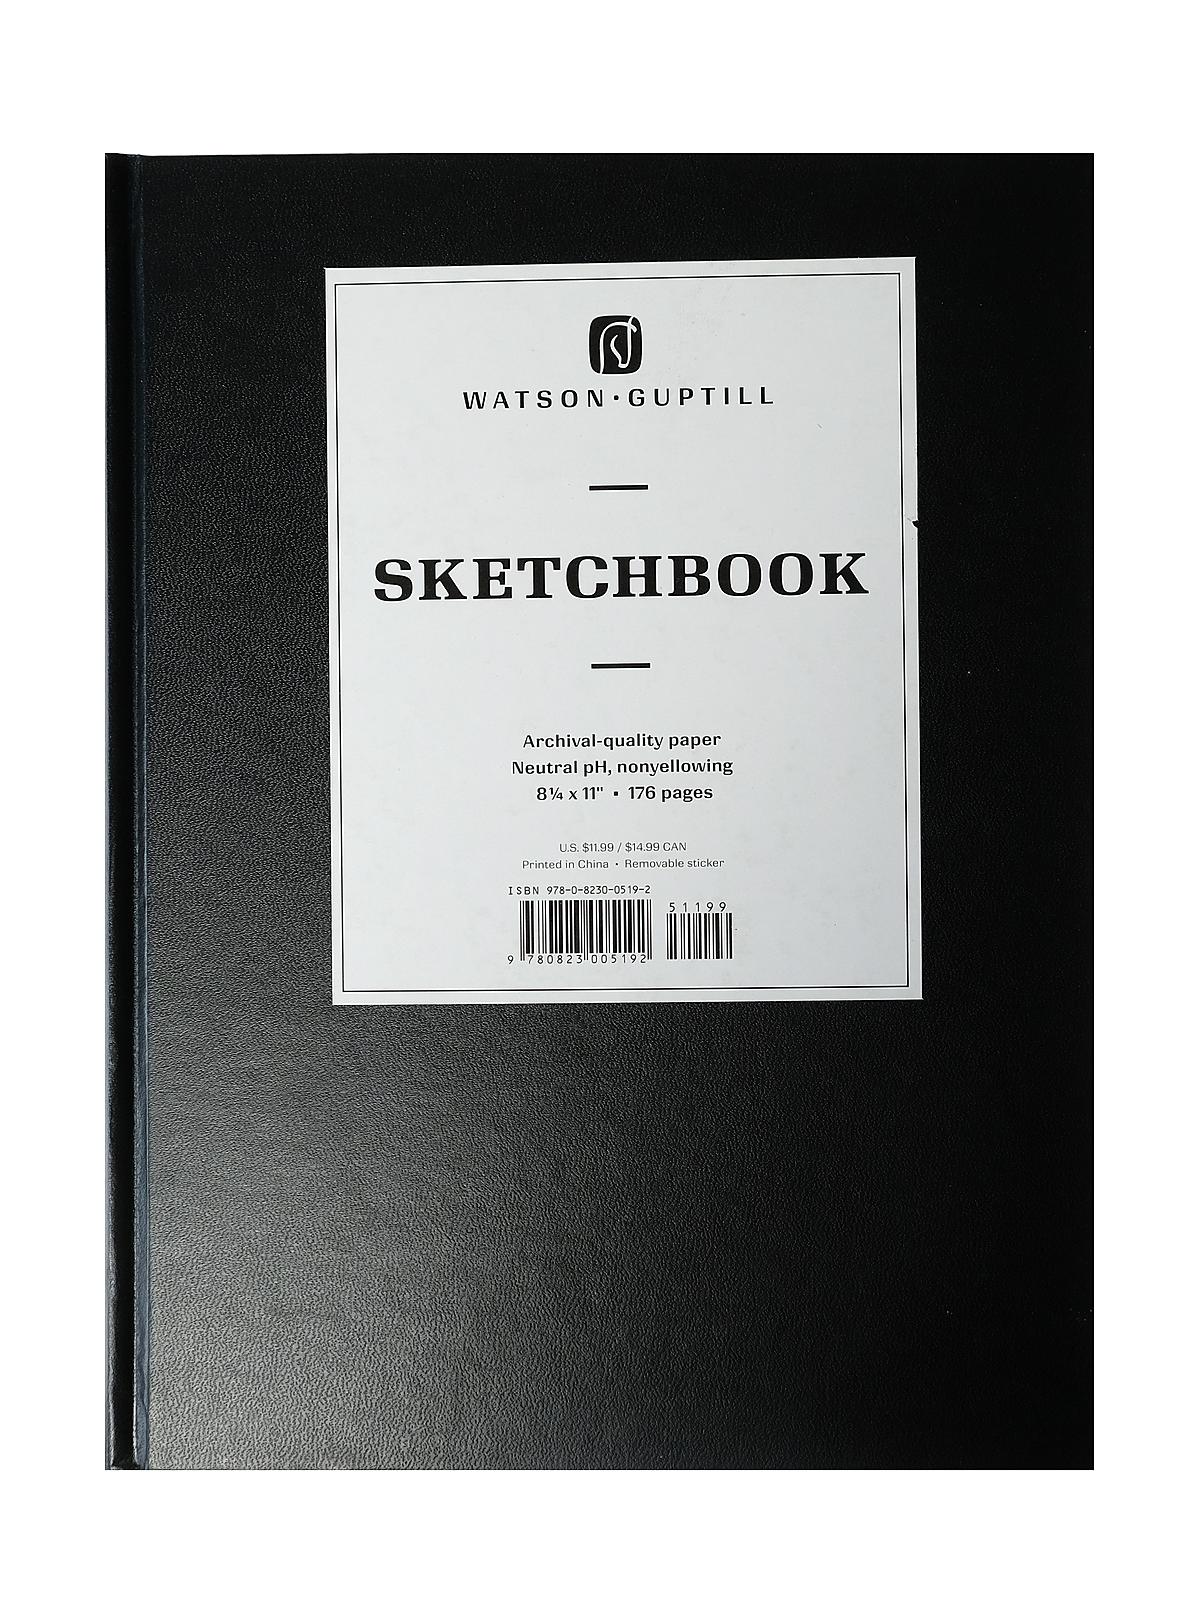 Hardcover Sketchbooks 8 1 4 In. X 11 In. Black